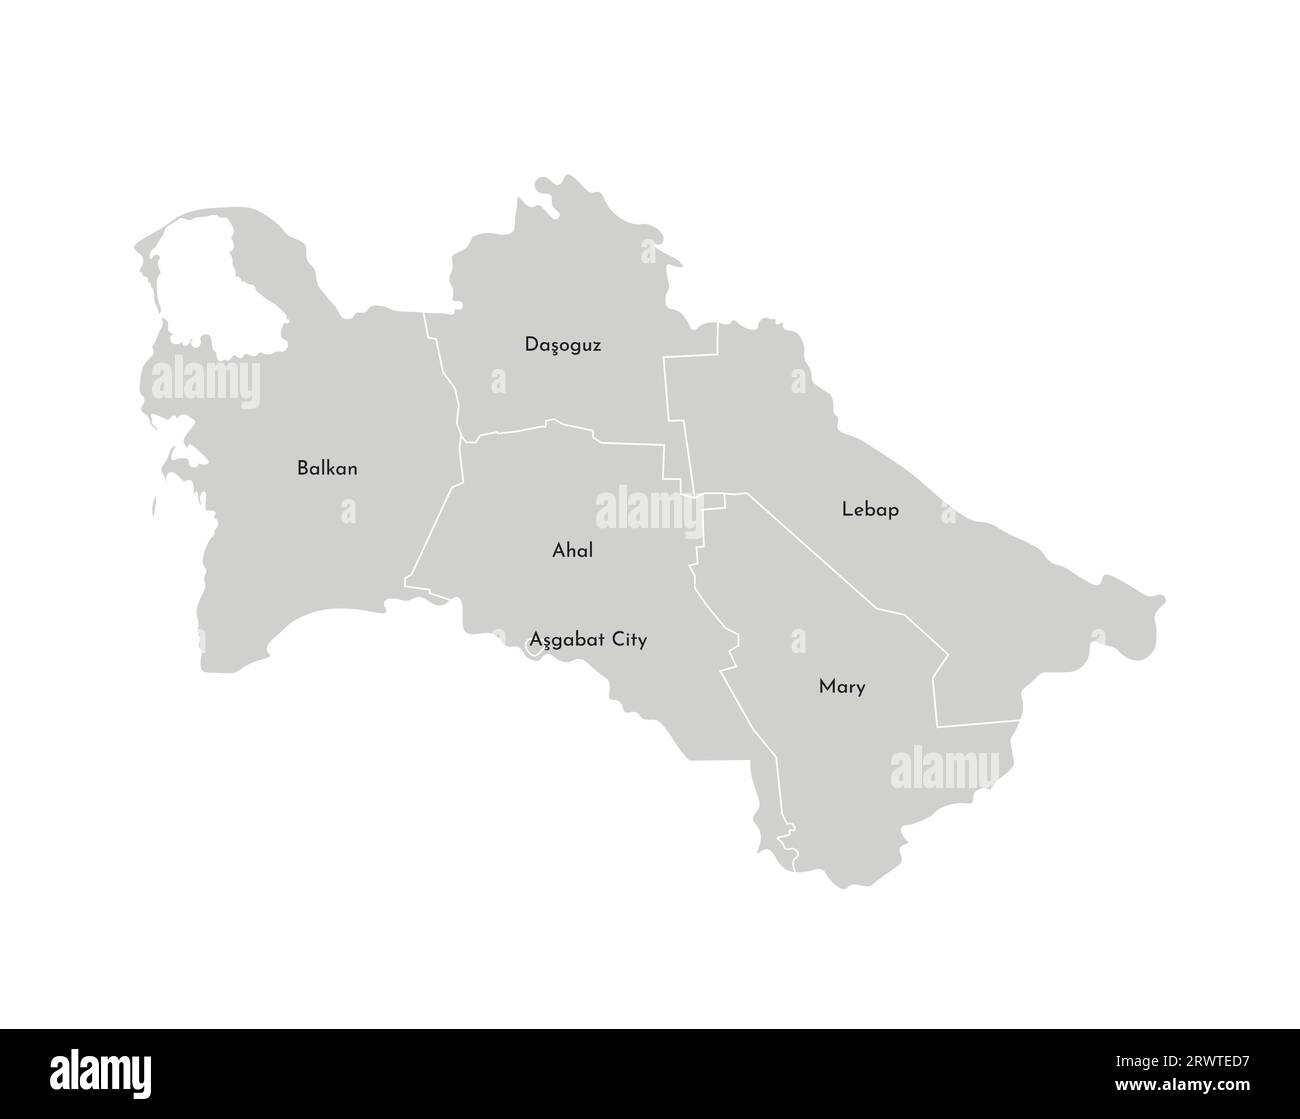 Vektorisolierte Darstellung einer vereinfachten Verwaltungskarte Turkmenistans. Grenzen und Namen der Bezirke (Regionen). Graue Silhouetten. Weiß o Stock Vektor